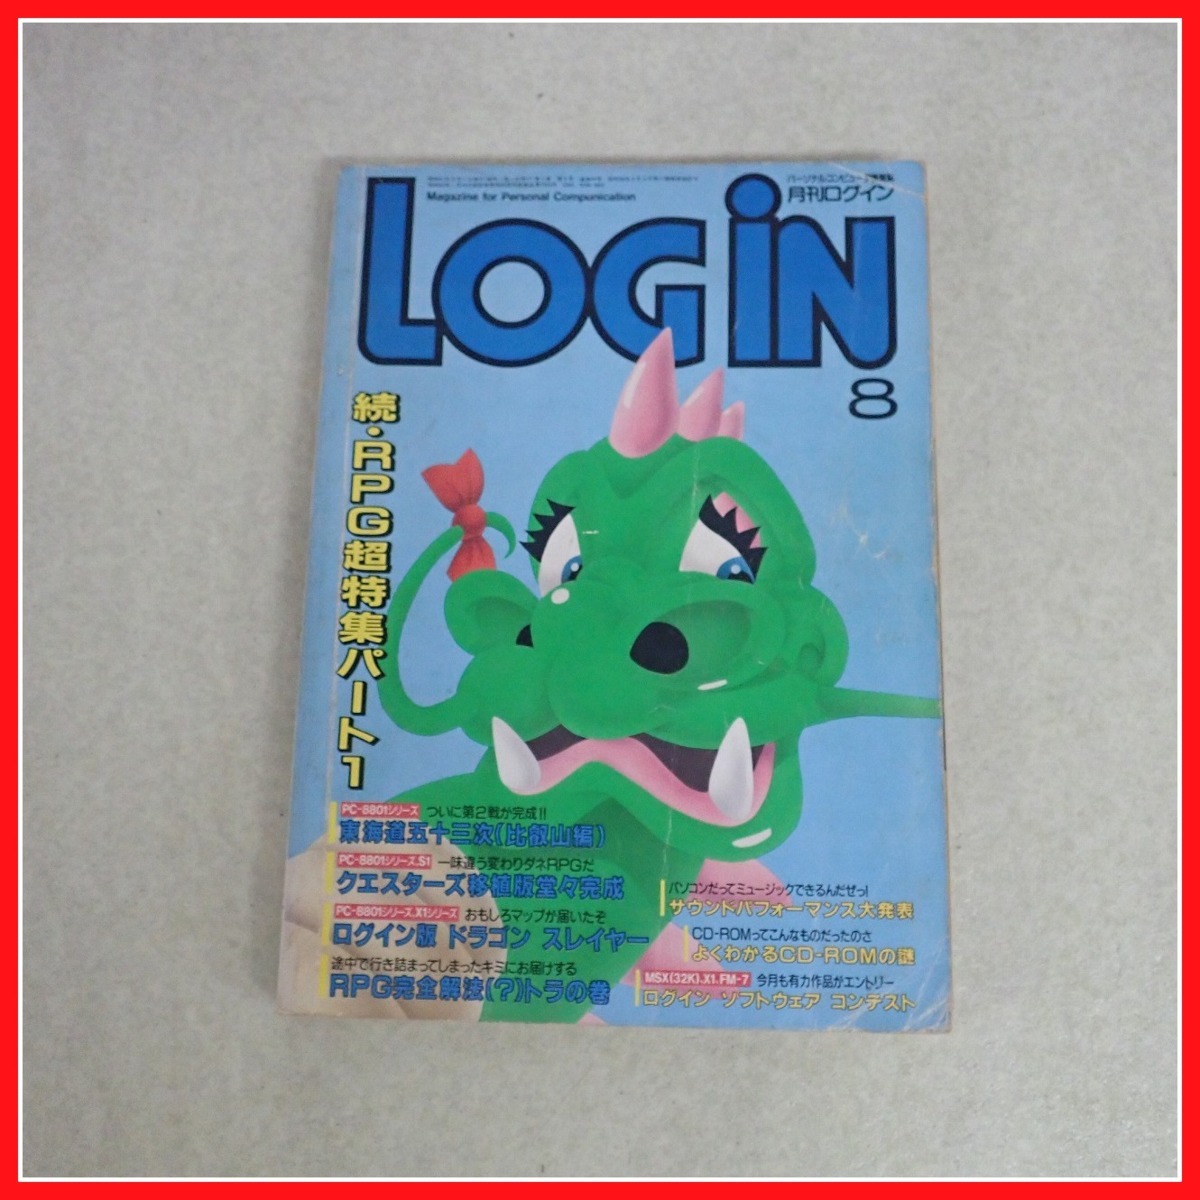 * журнал ежемесячный логин /Login 1986 год продажа минут 4/5/8 месяц номер 3 шт. комплект персональный компьютер информация журнал ASCII ASCII [10